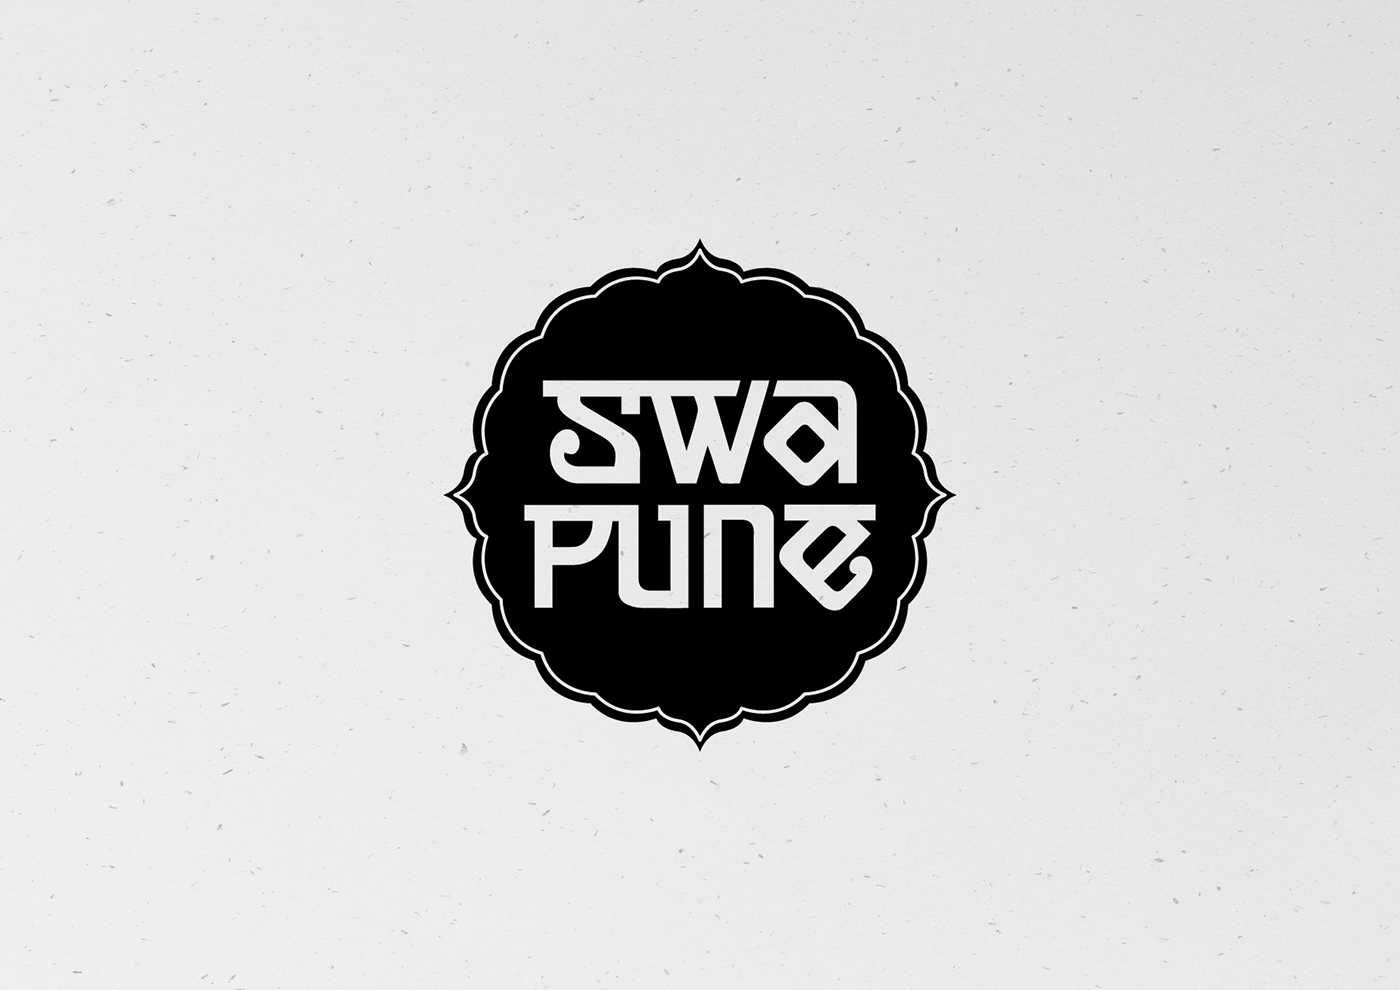 PUNE Puneri City branding Pune design festival winner pune branding citylove heritage traditional culture